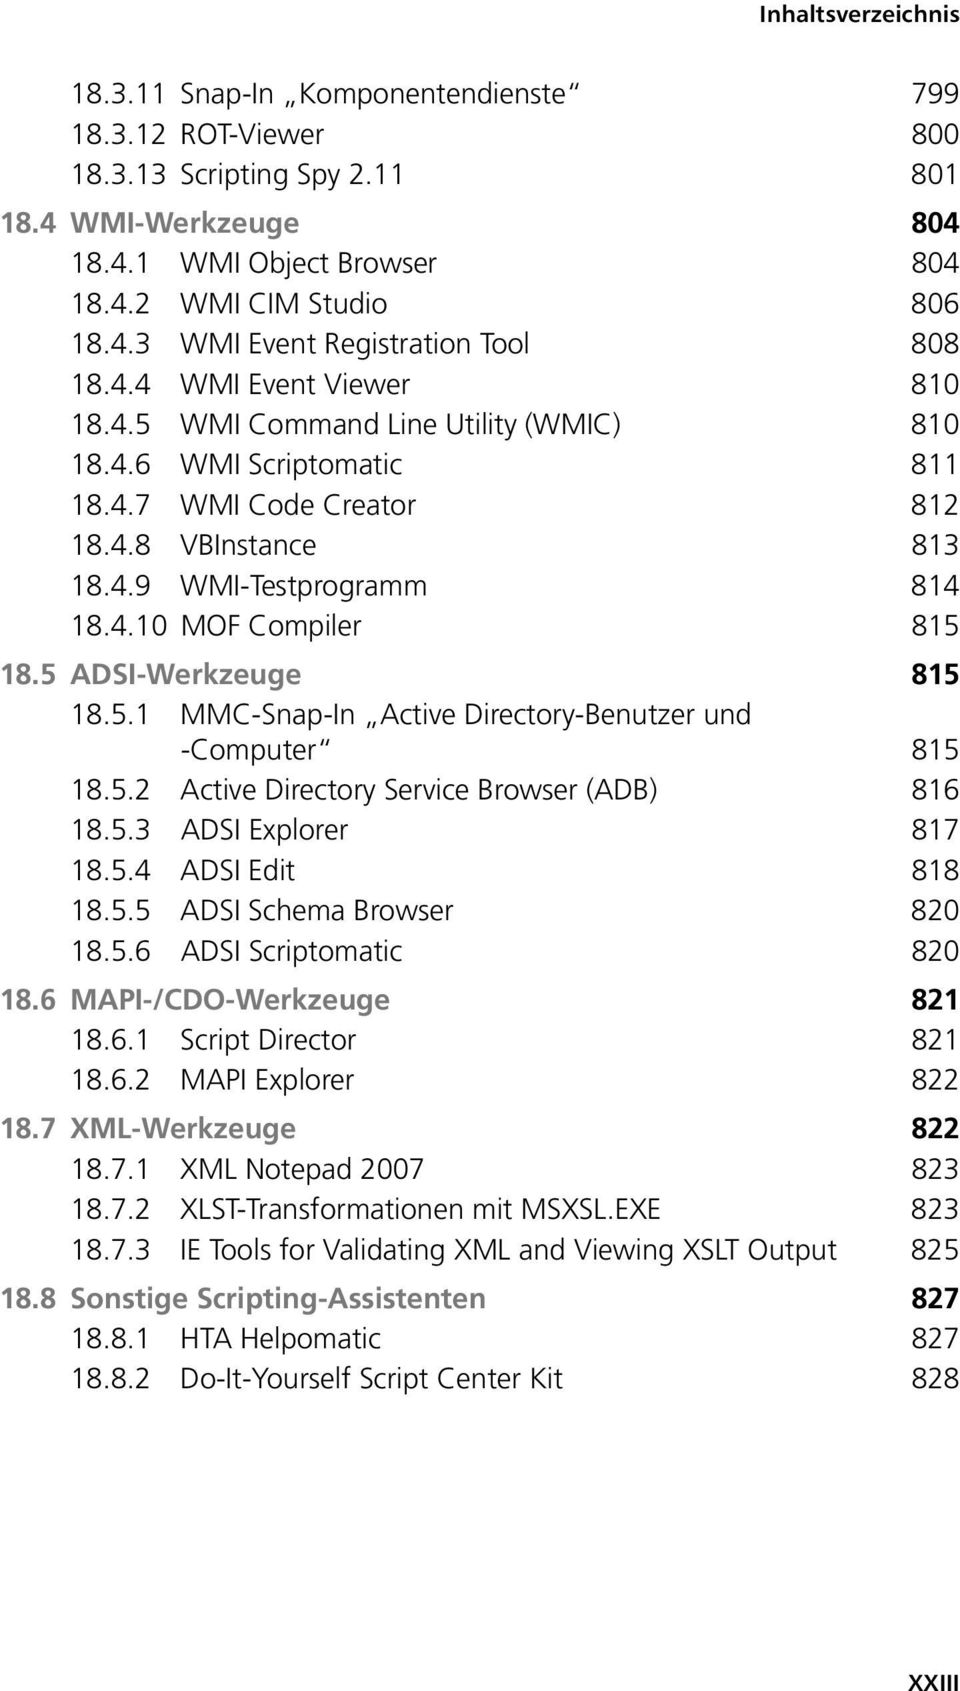 5 ADSI-Werkzeuge 815 18.5.1 MMC-Snap-In Active Directory-Benutzer und -Computer 815 18.5.2 Active Directory Service Browser (ADB) 816 18.5.3 ADSI Explorer 817 18.5.4 ADSI Edit 818 18.5.5 ADSI Schema Browser 820 18.